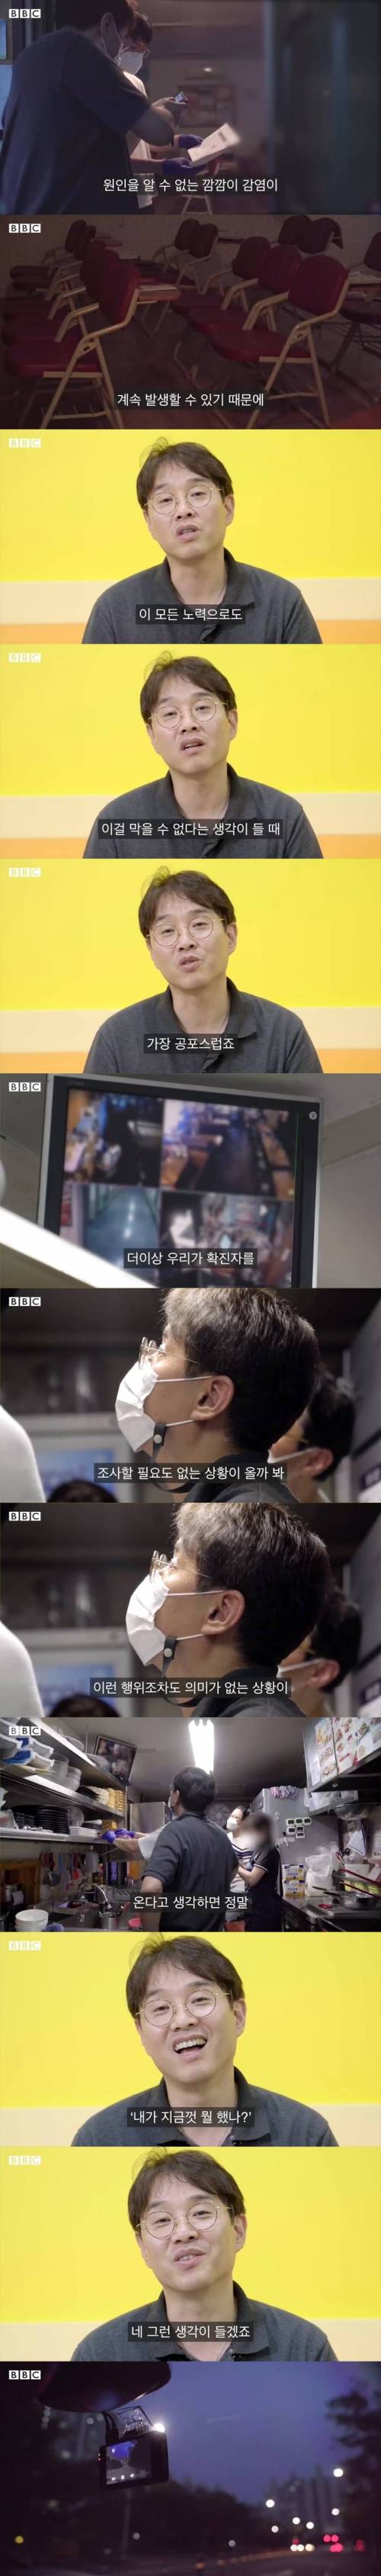 [스압] BBC에서 제작한 한국 역학조사관 이야기